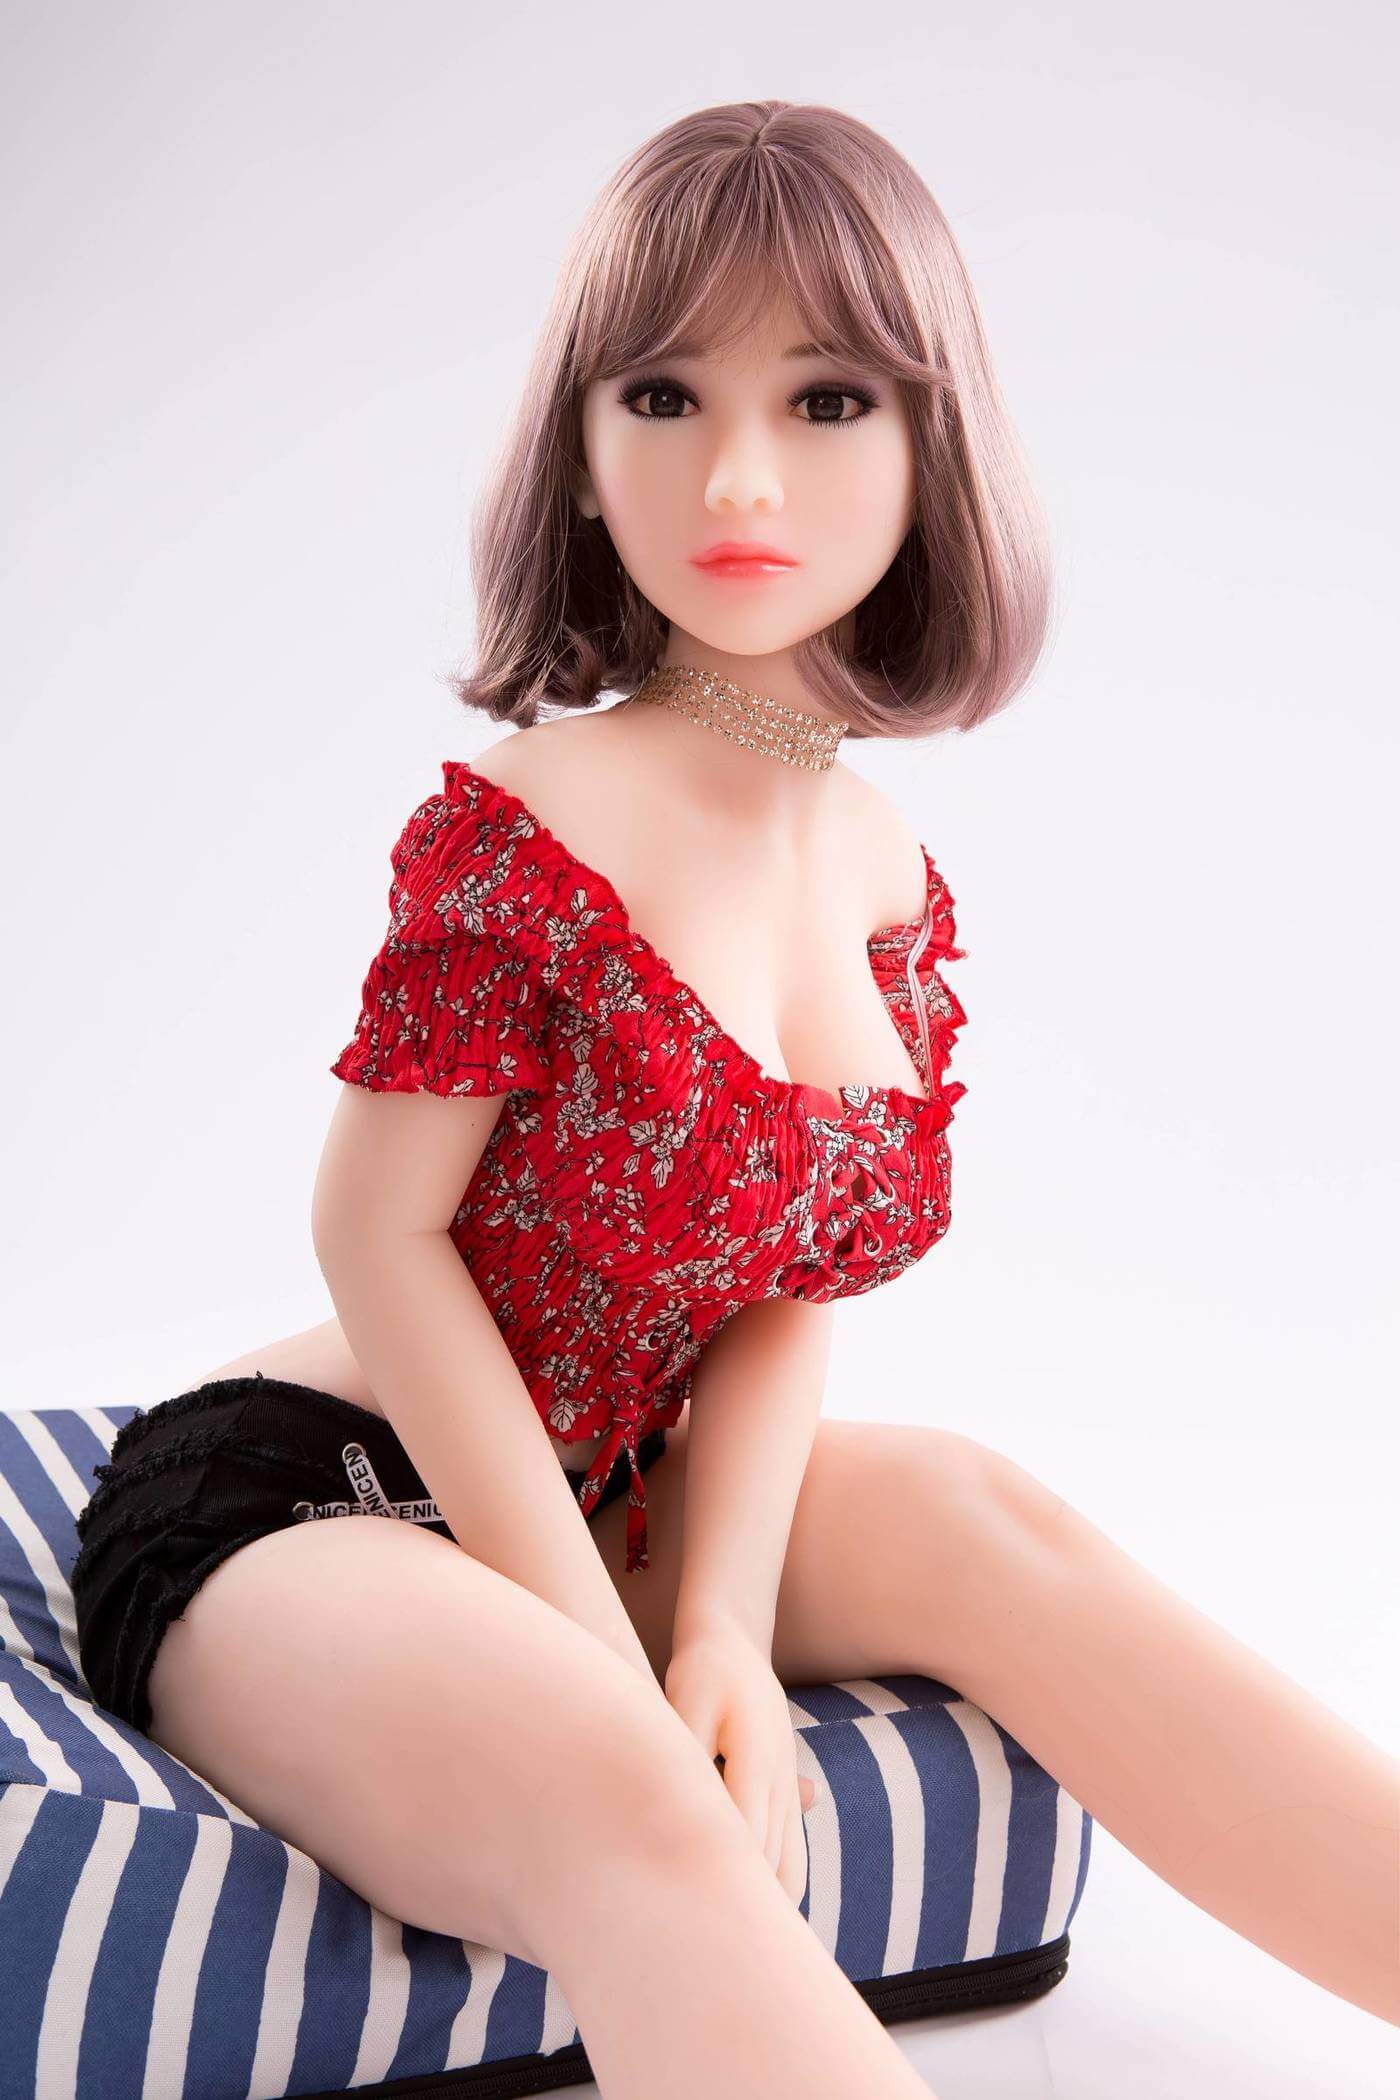 Asian teen short hair sex dolls_9_5